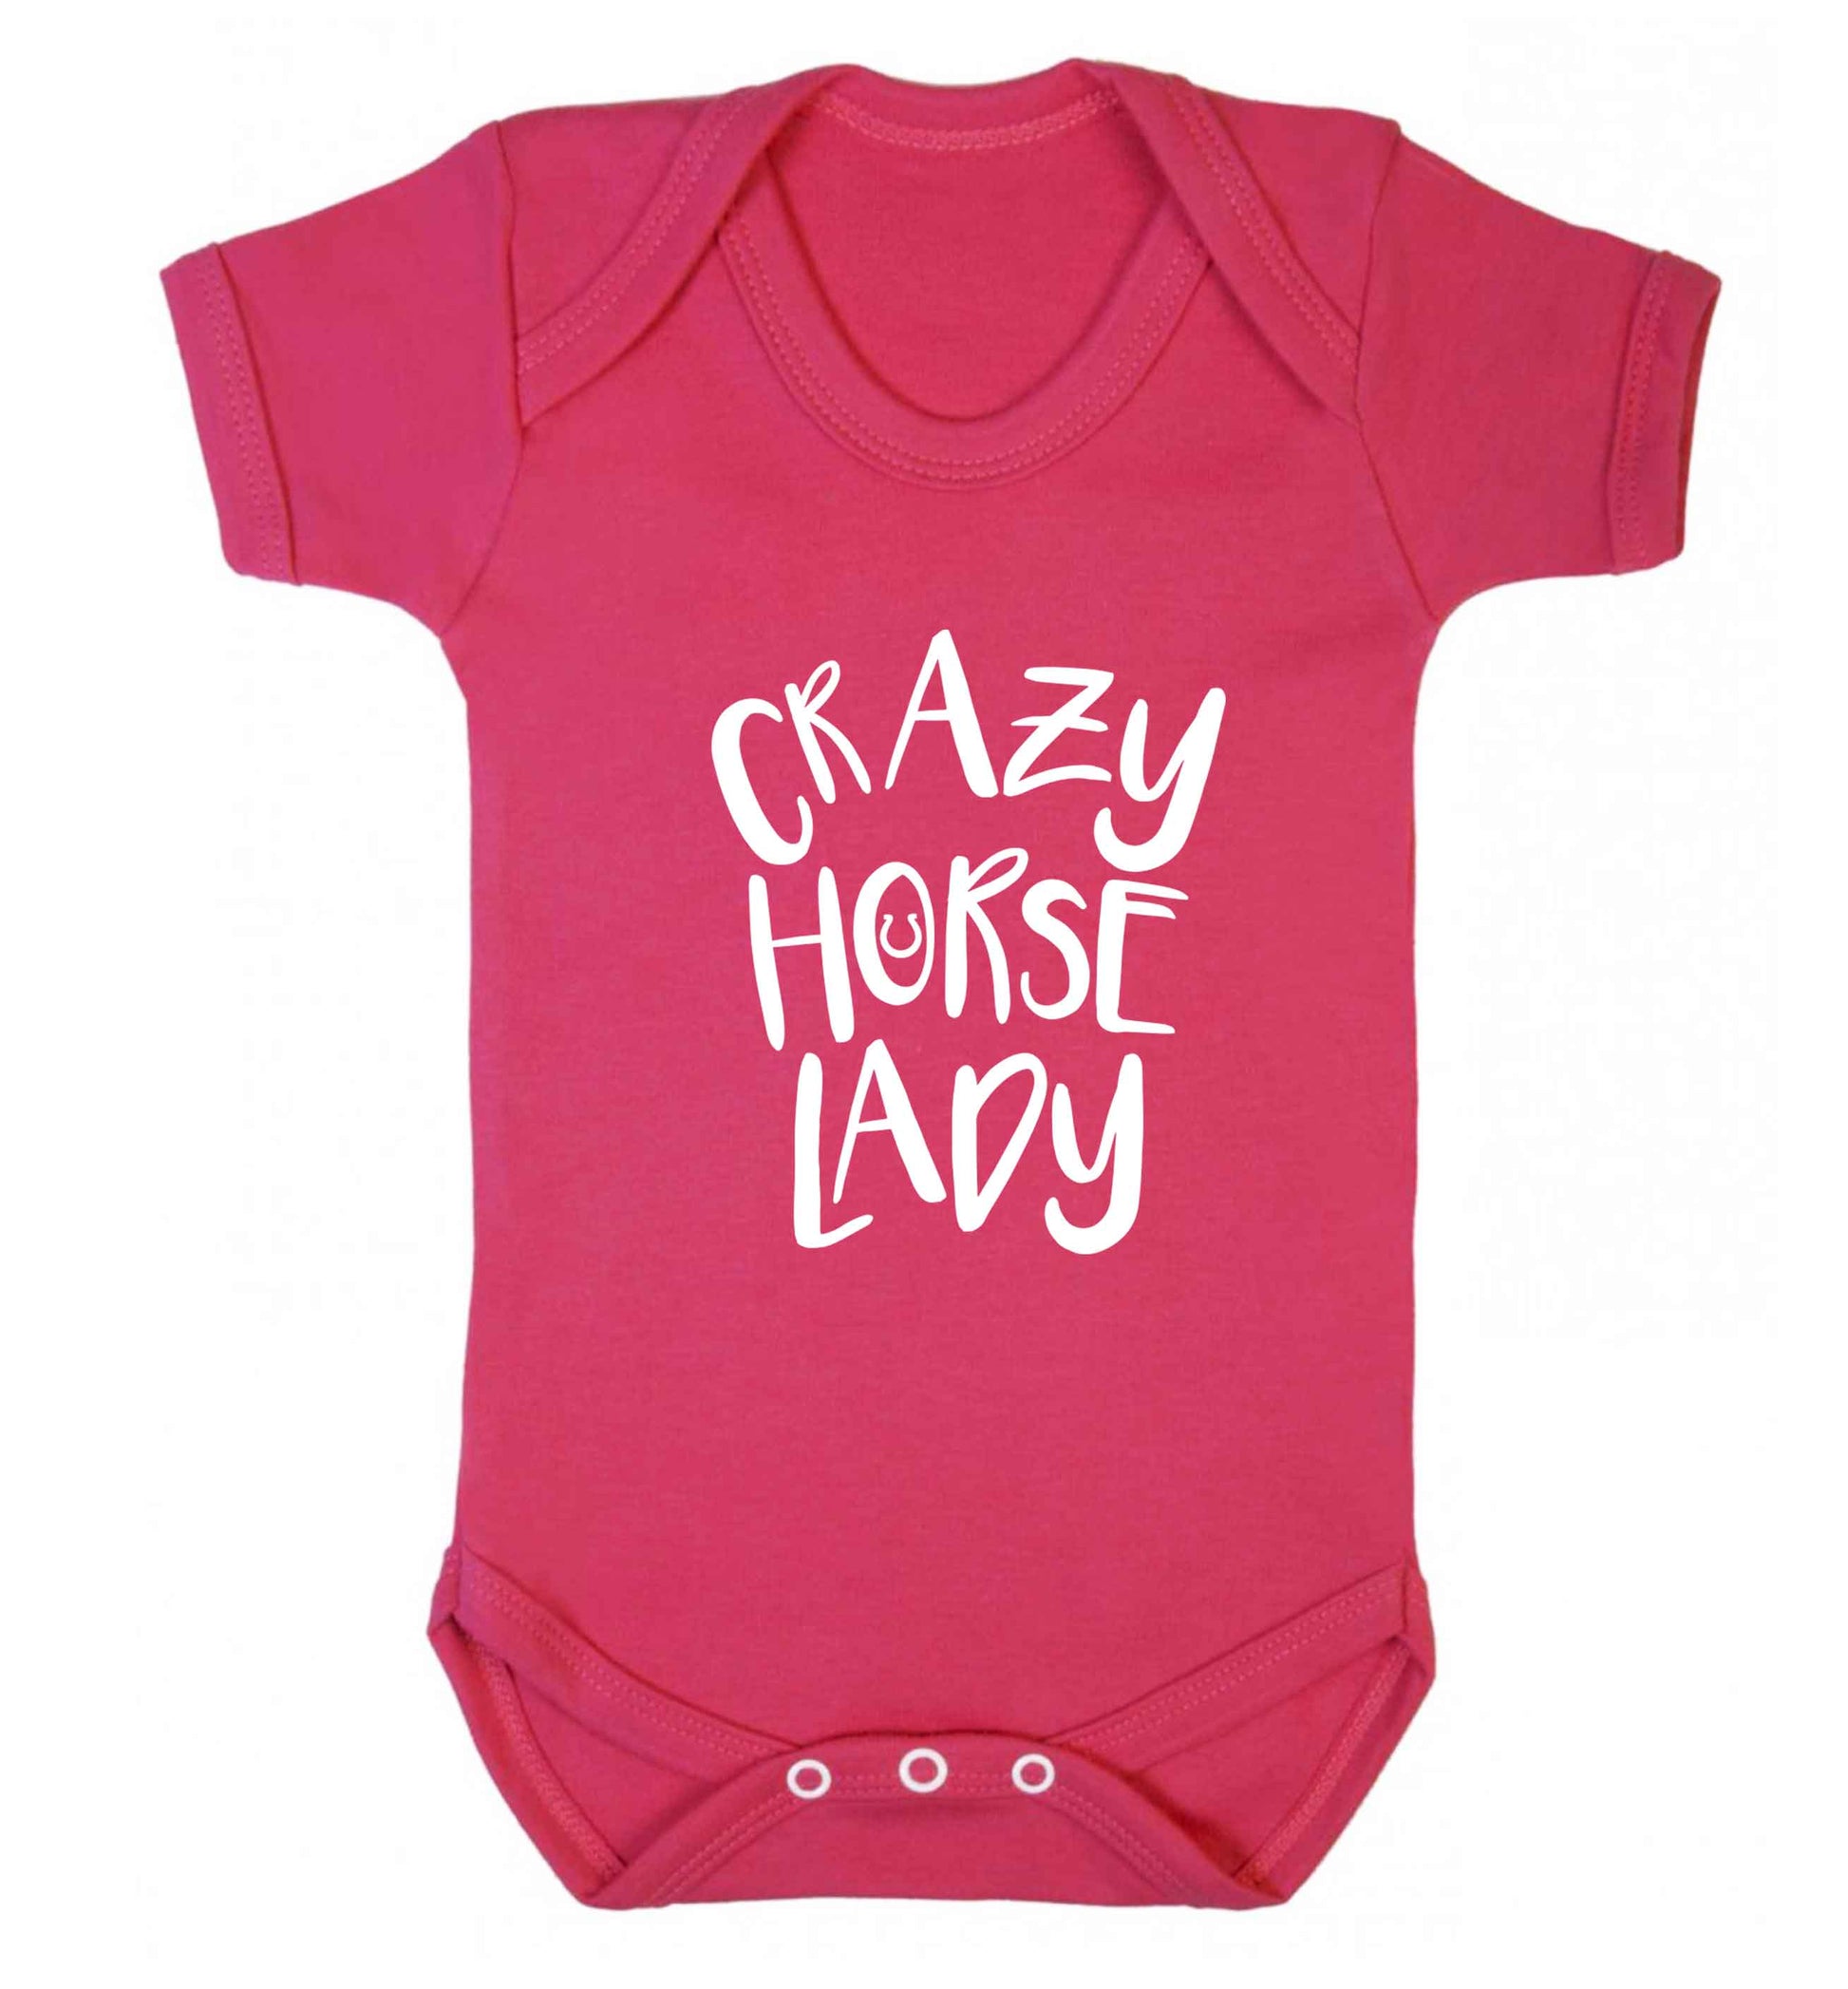 Crazy horse lady baby vest dark pink 18-24 months